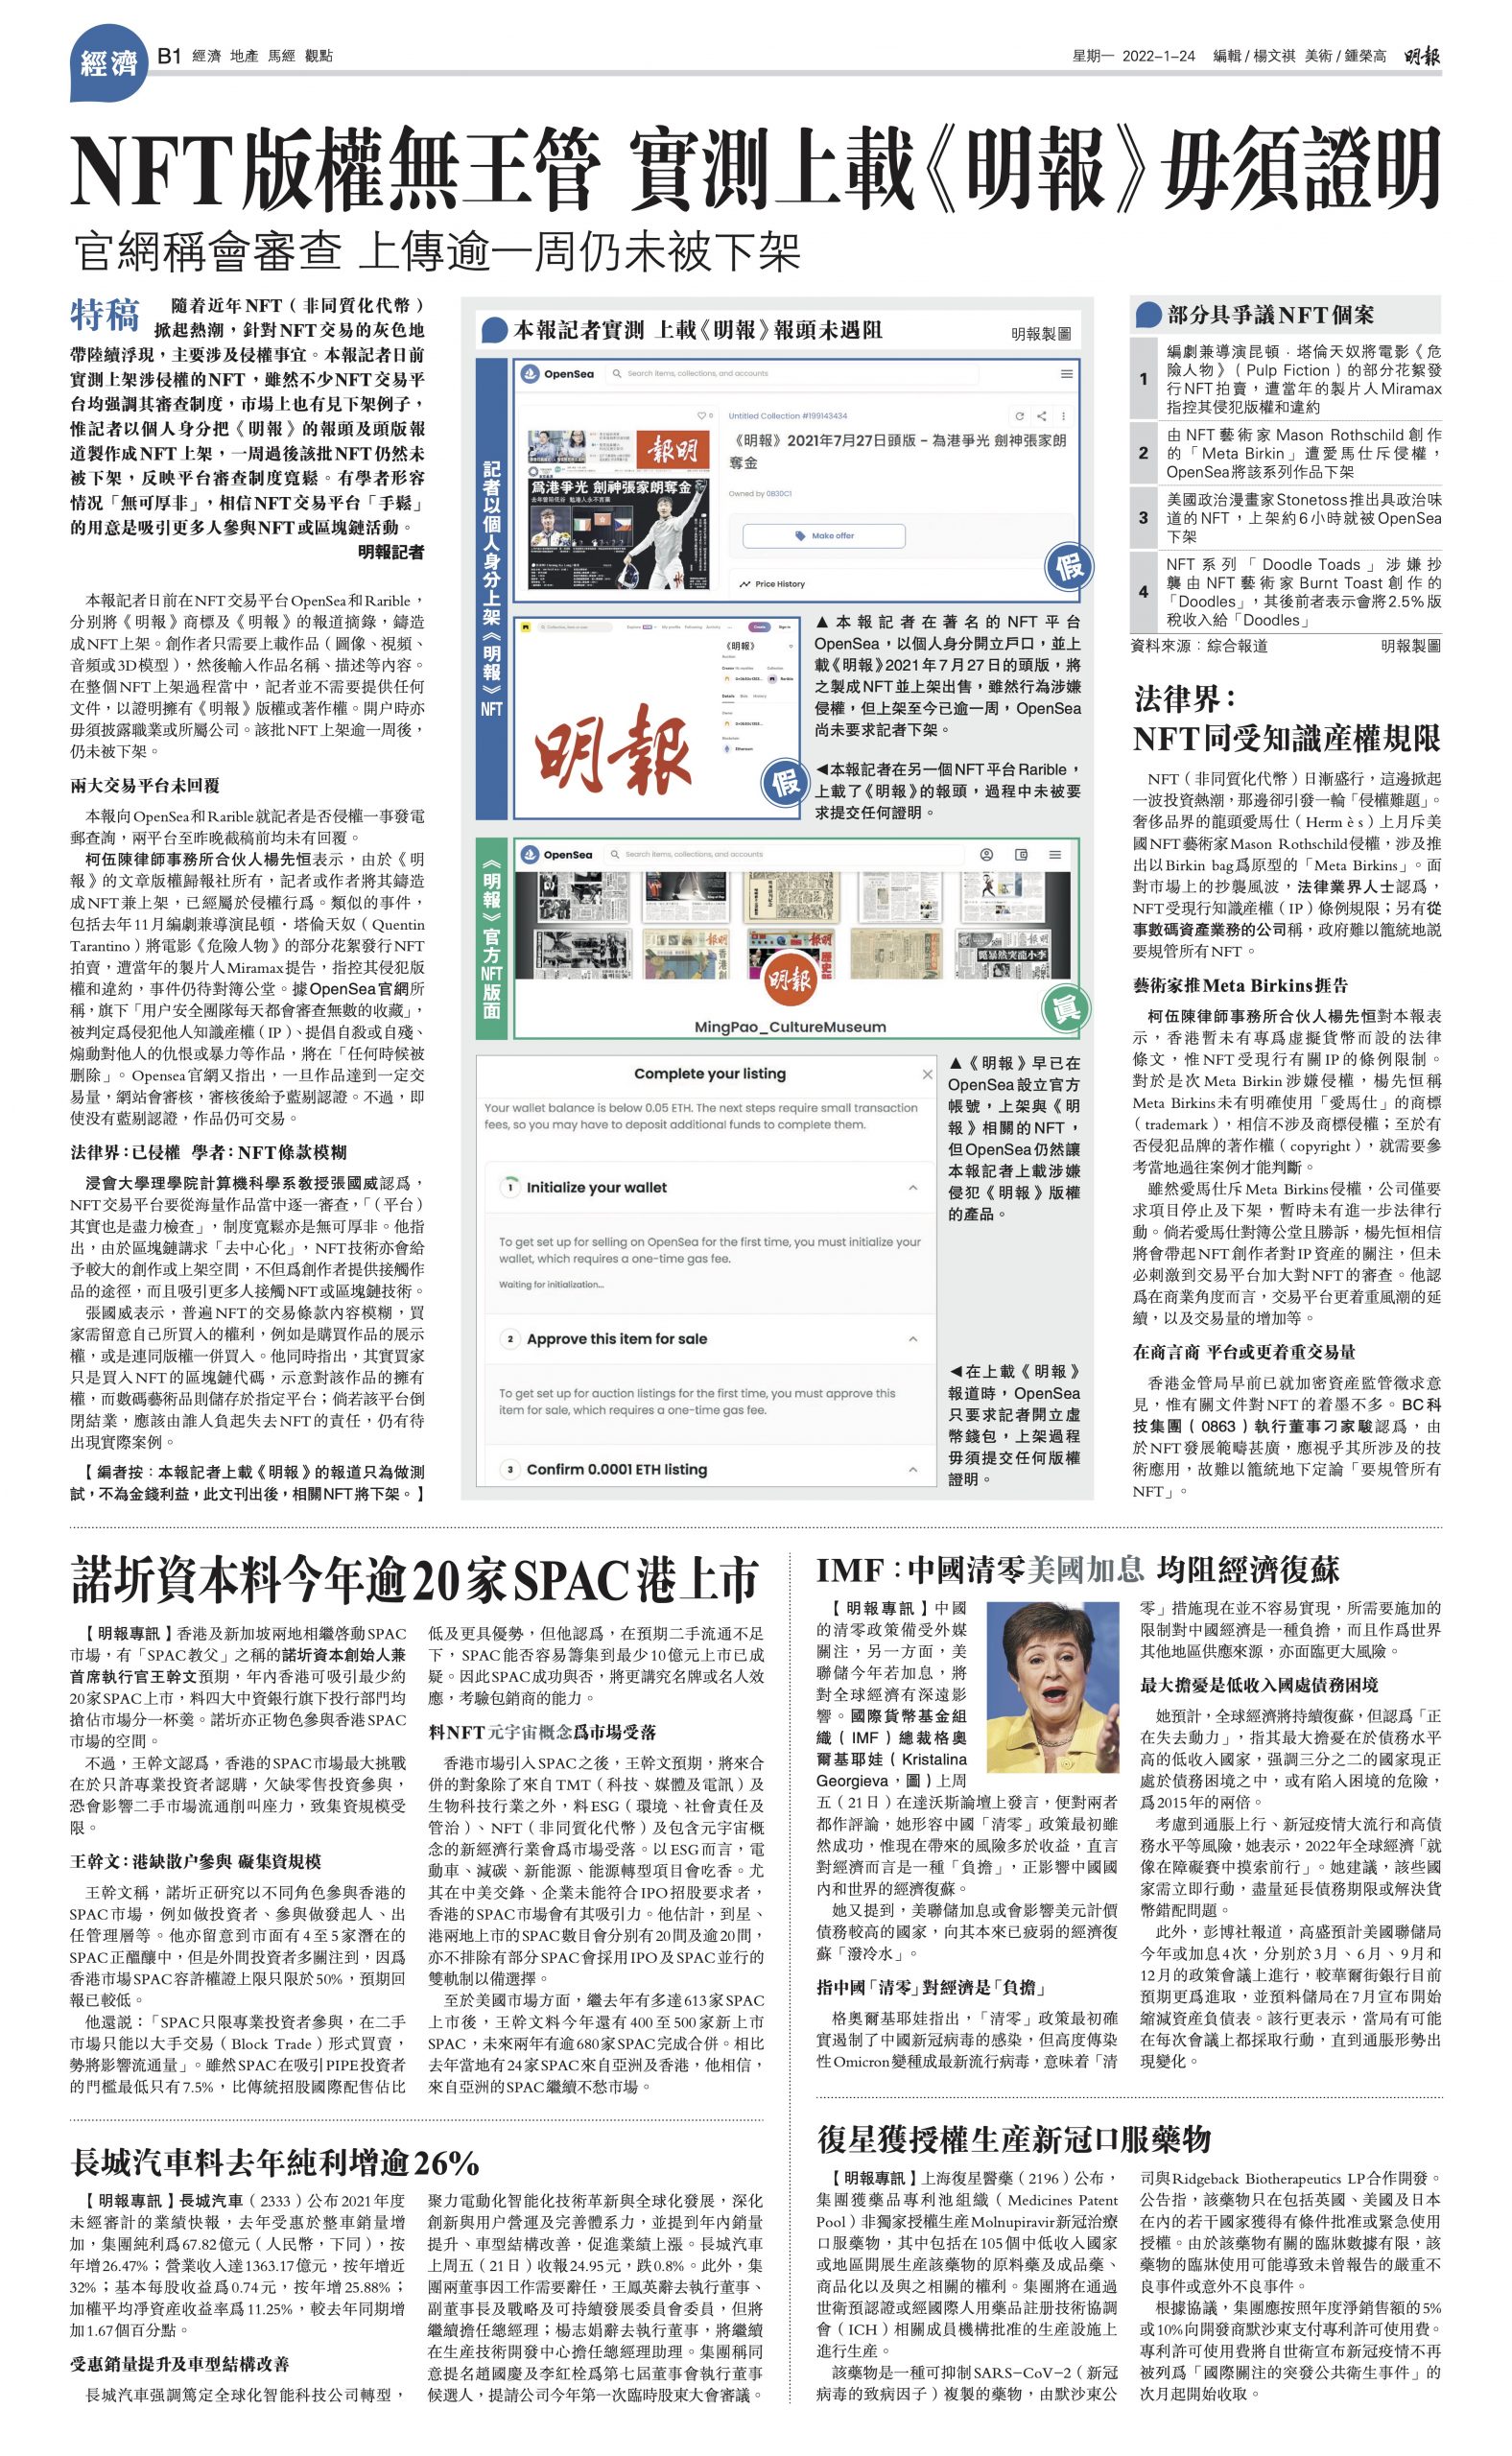 THE 7TH BUSINESS JOURNALISM AWARDS OF THE HANG SENG UNIVERSITY OF HONG KONG - The Hang Seng University of Hong Kong 2